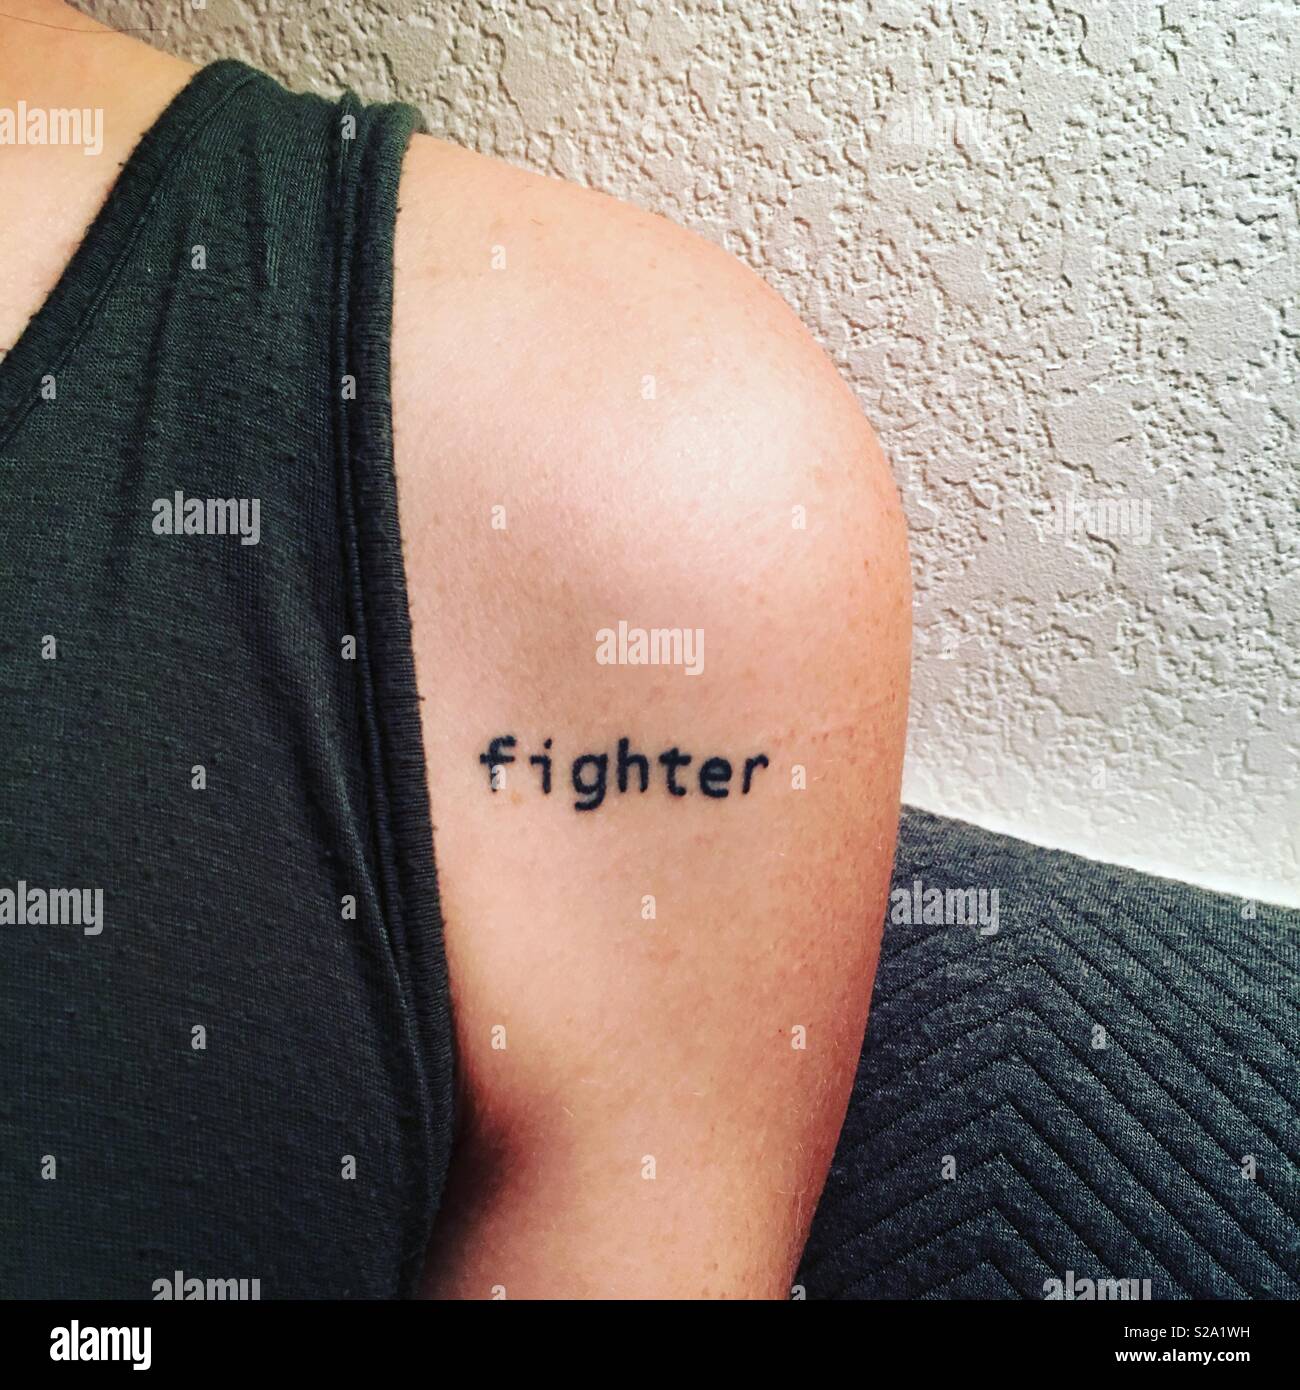 L'épaule d'une femme avec un tatouage qui dit "fighter". Banque D'Images